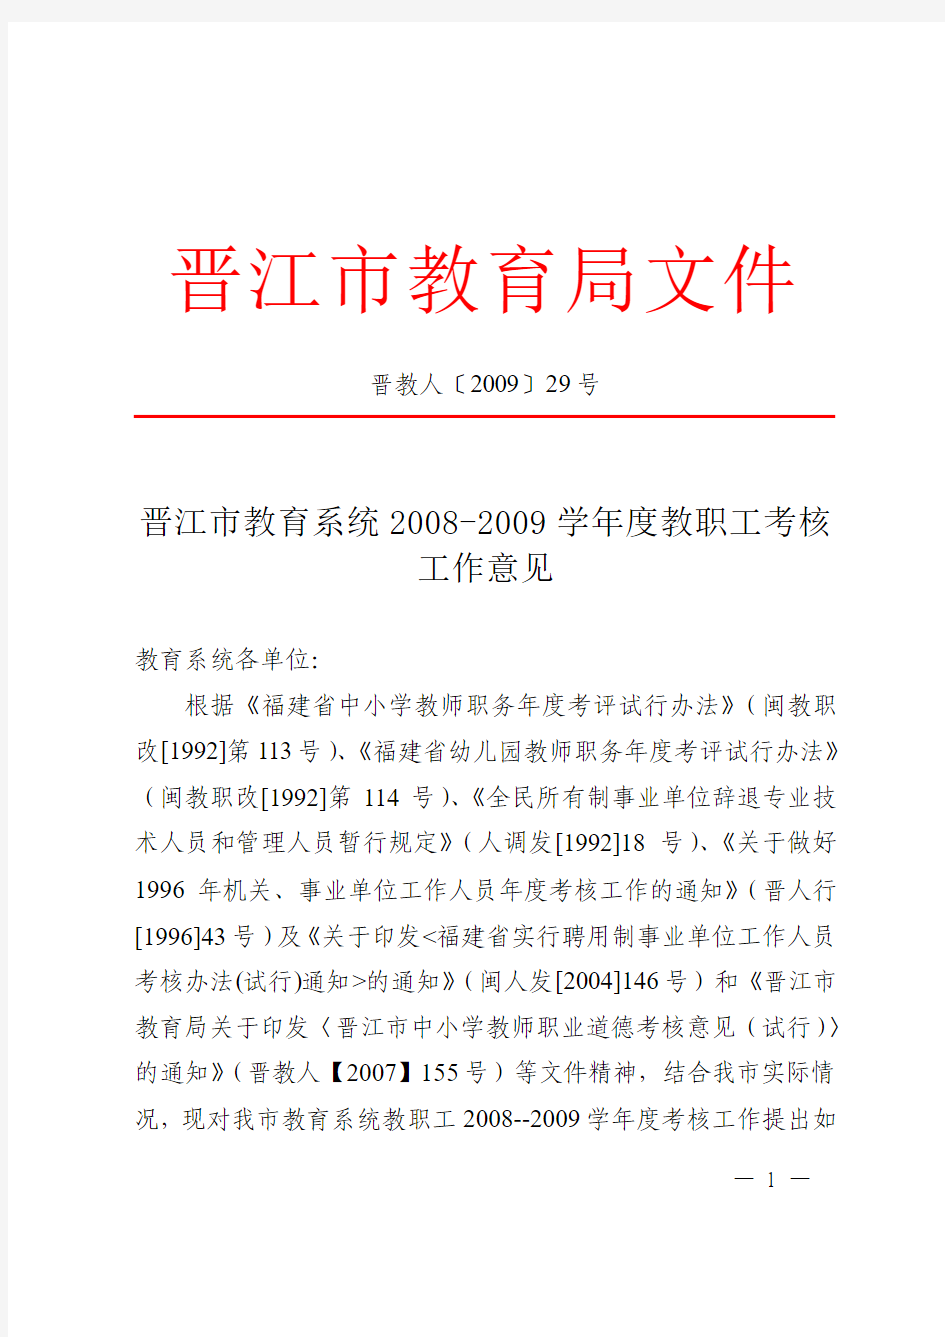 晋江市教育系统2008-2009学年度教职工考核工作意见